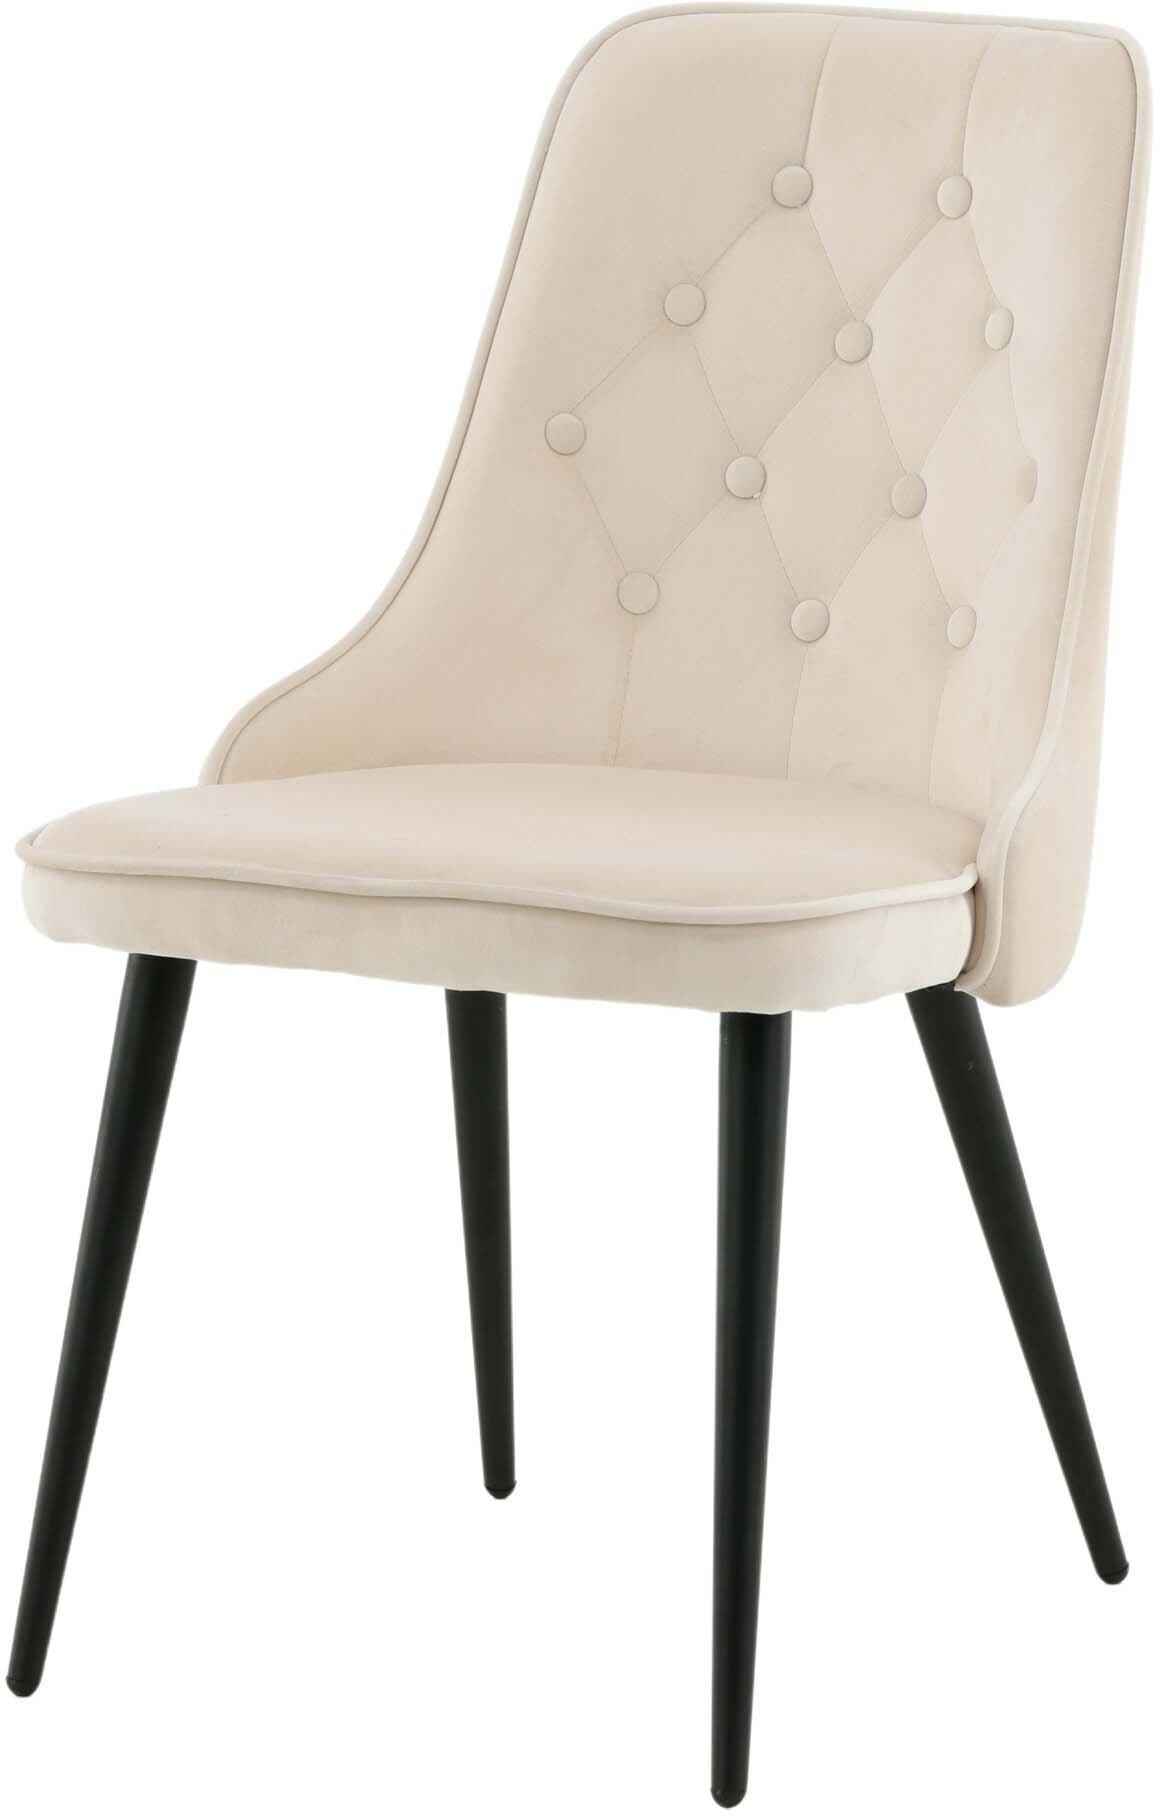 Velvet Deluxe Stuhl in Beige / Schwarz präsentiert im Onlineshop von KAQTU Design AG. Stuhl ist von Venture Home